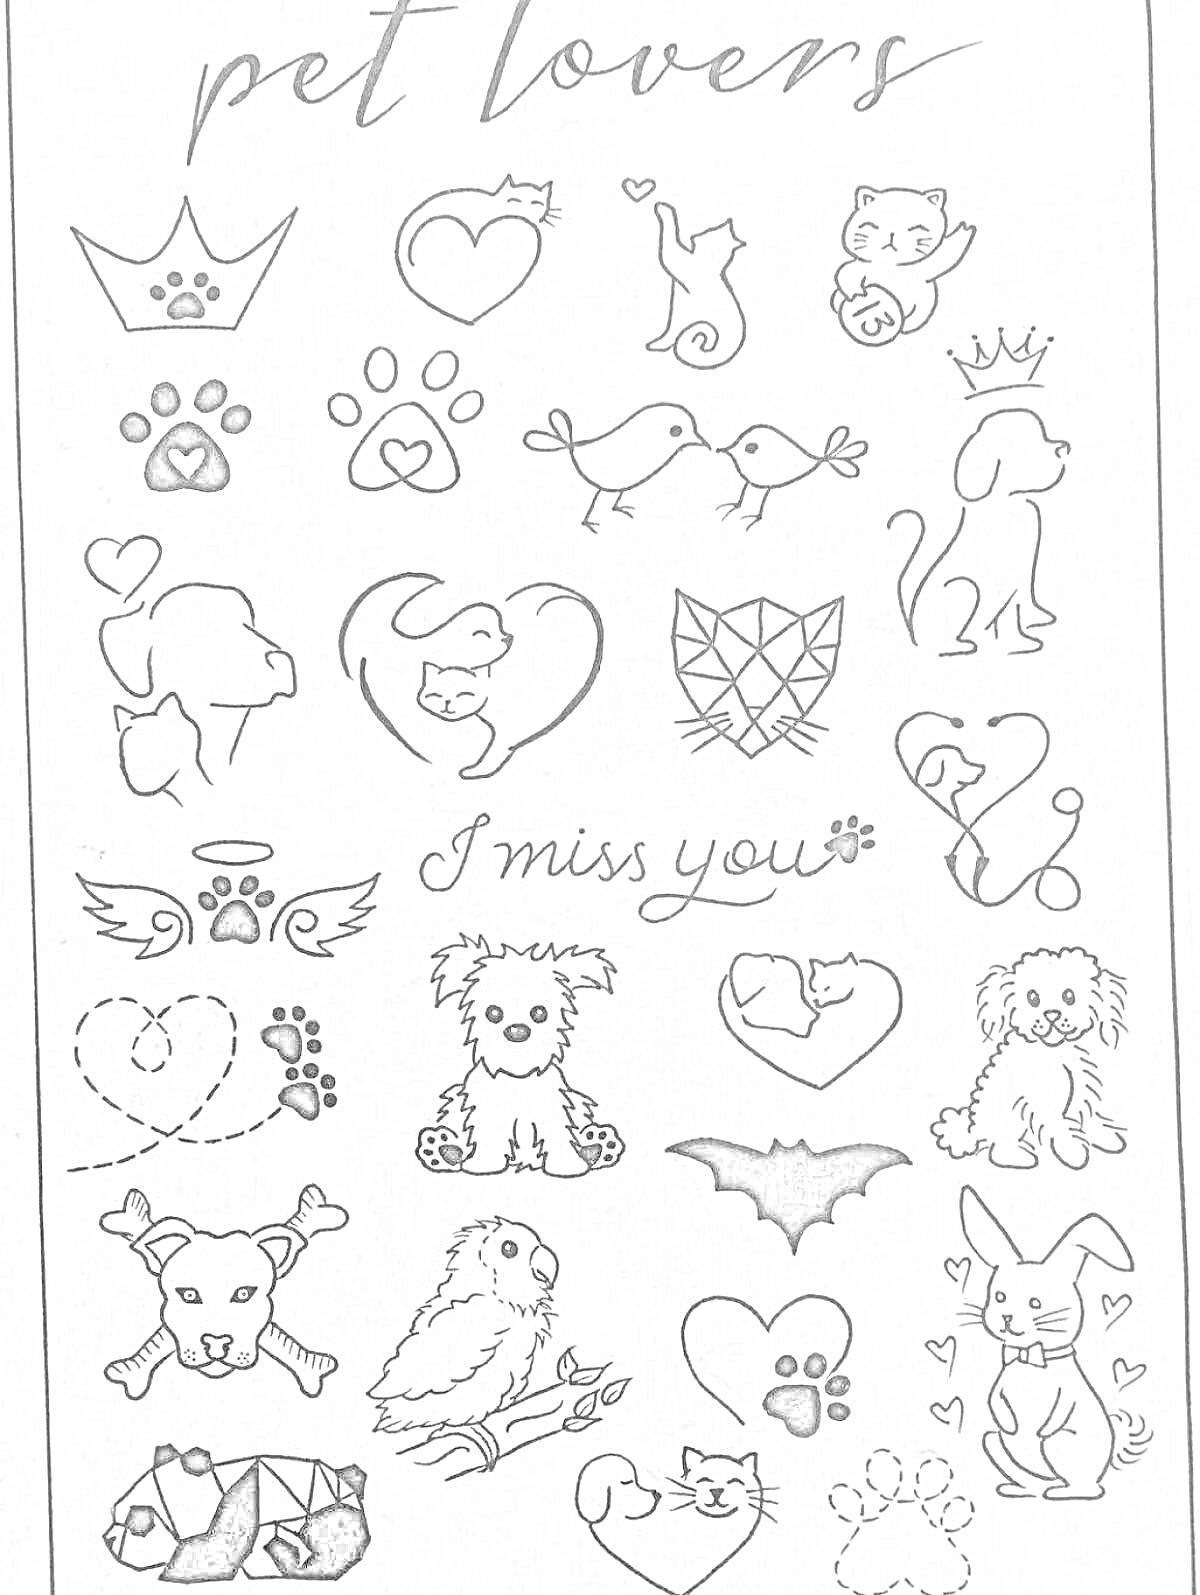 Раскраска мини татуировки для любителей питомцев, включая корону, следы лап, кошку, собак, рыбок, птиц, сердца, звезды, крылышки, надпись 